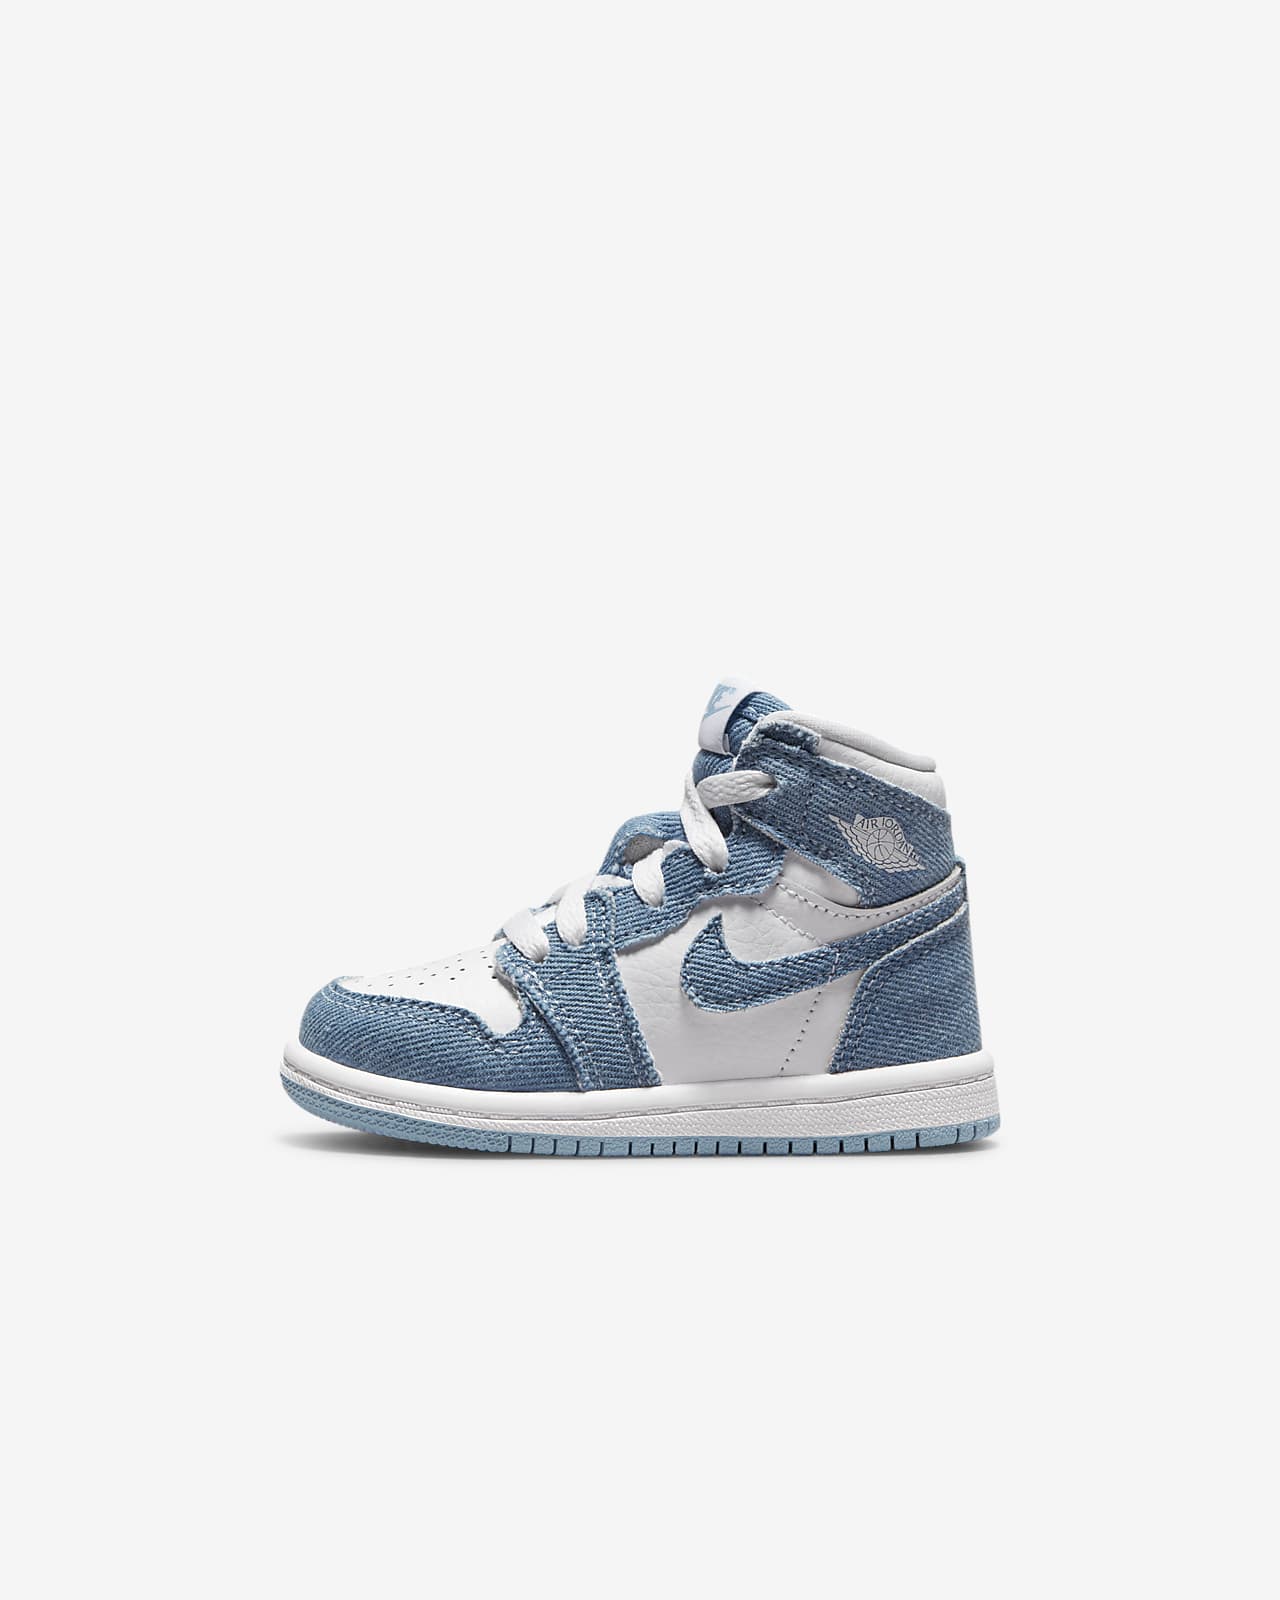 Jordan 1 High OG Baby/Toddler Shoes